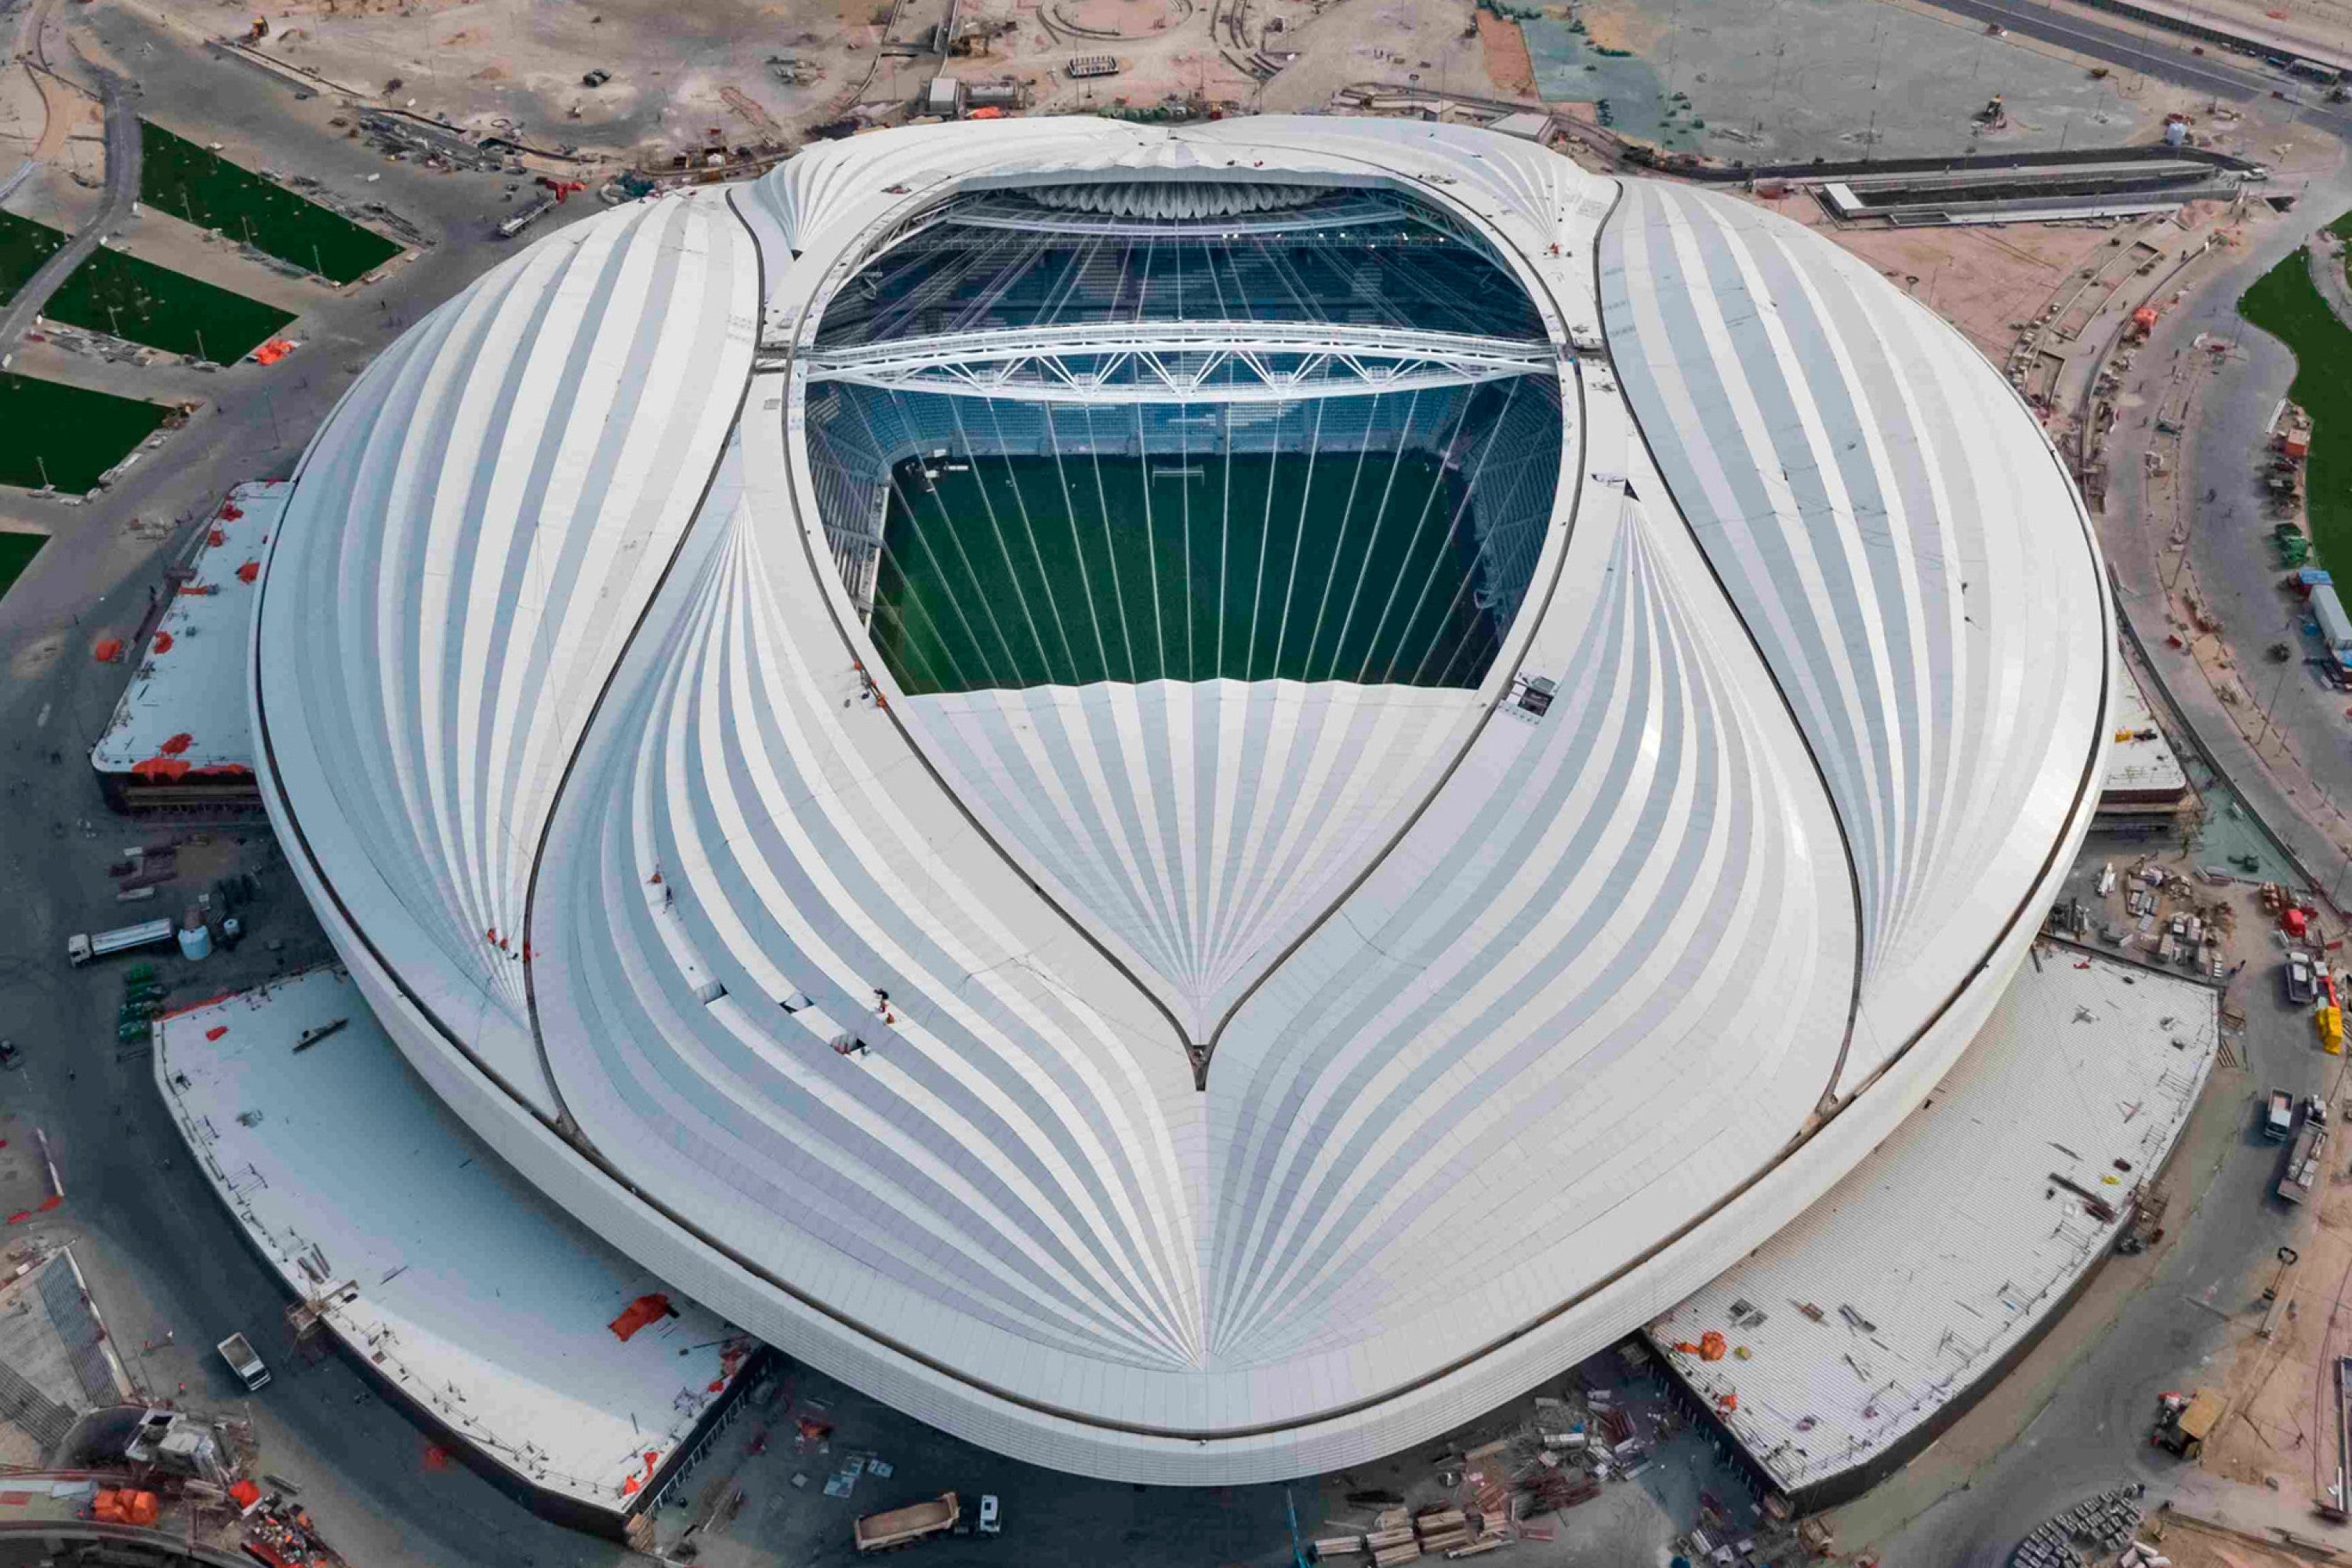 The magnificent Al Janoub Stadium